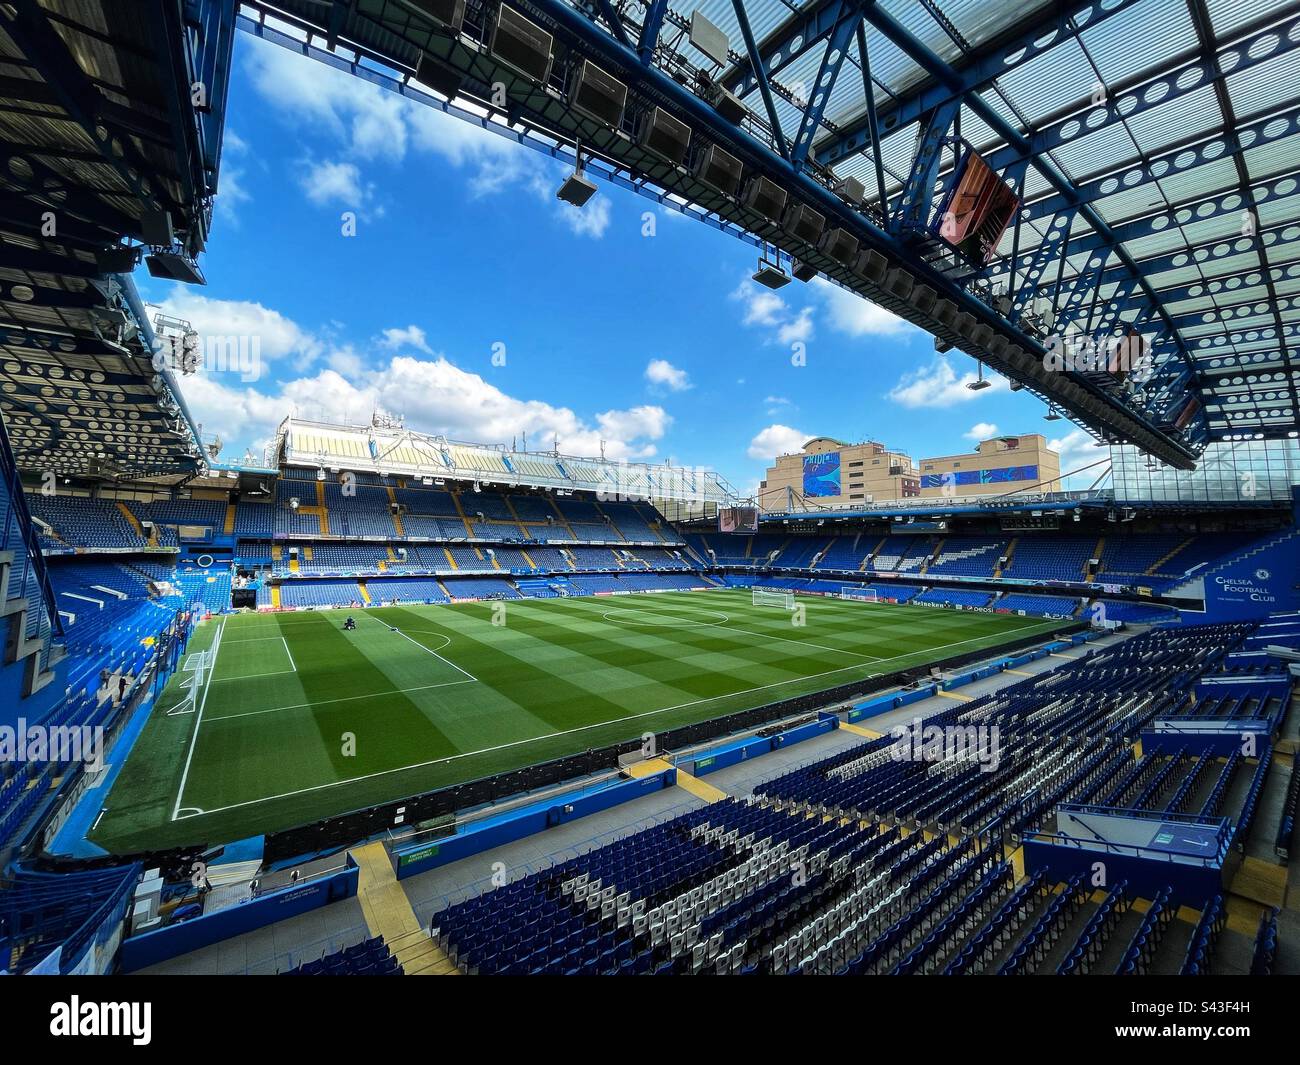 Vue générale sur le terrain de football du stade Stamford Bridge, qui abrite le club de football de Chelsea. Chelsea joue dans la Premier League anglaise. Banque D'Images